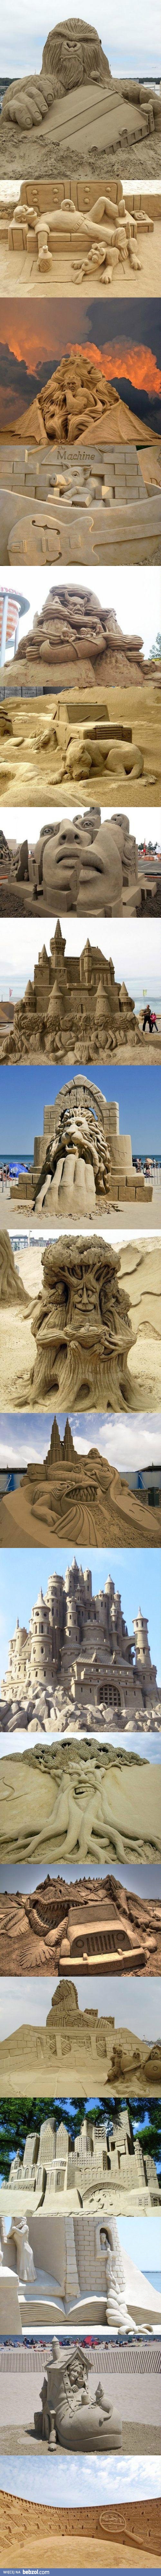 Piękne rzeźby w piasku